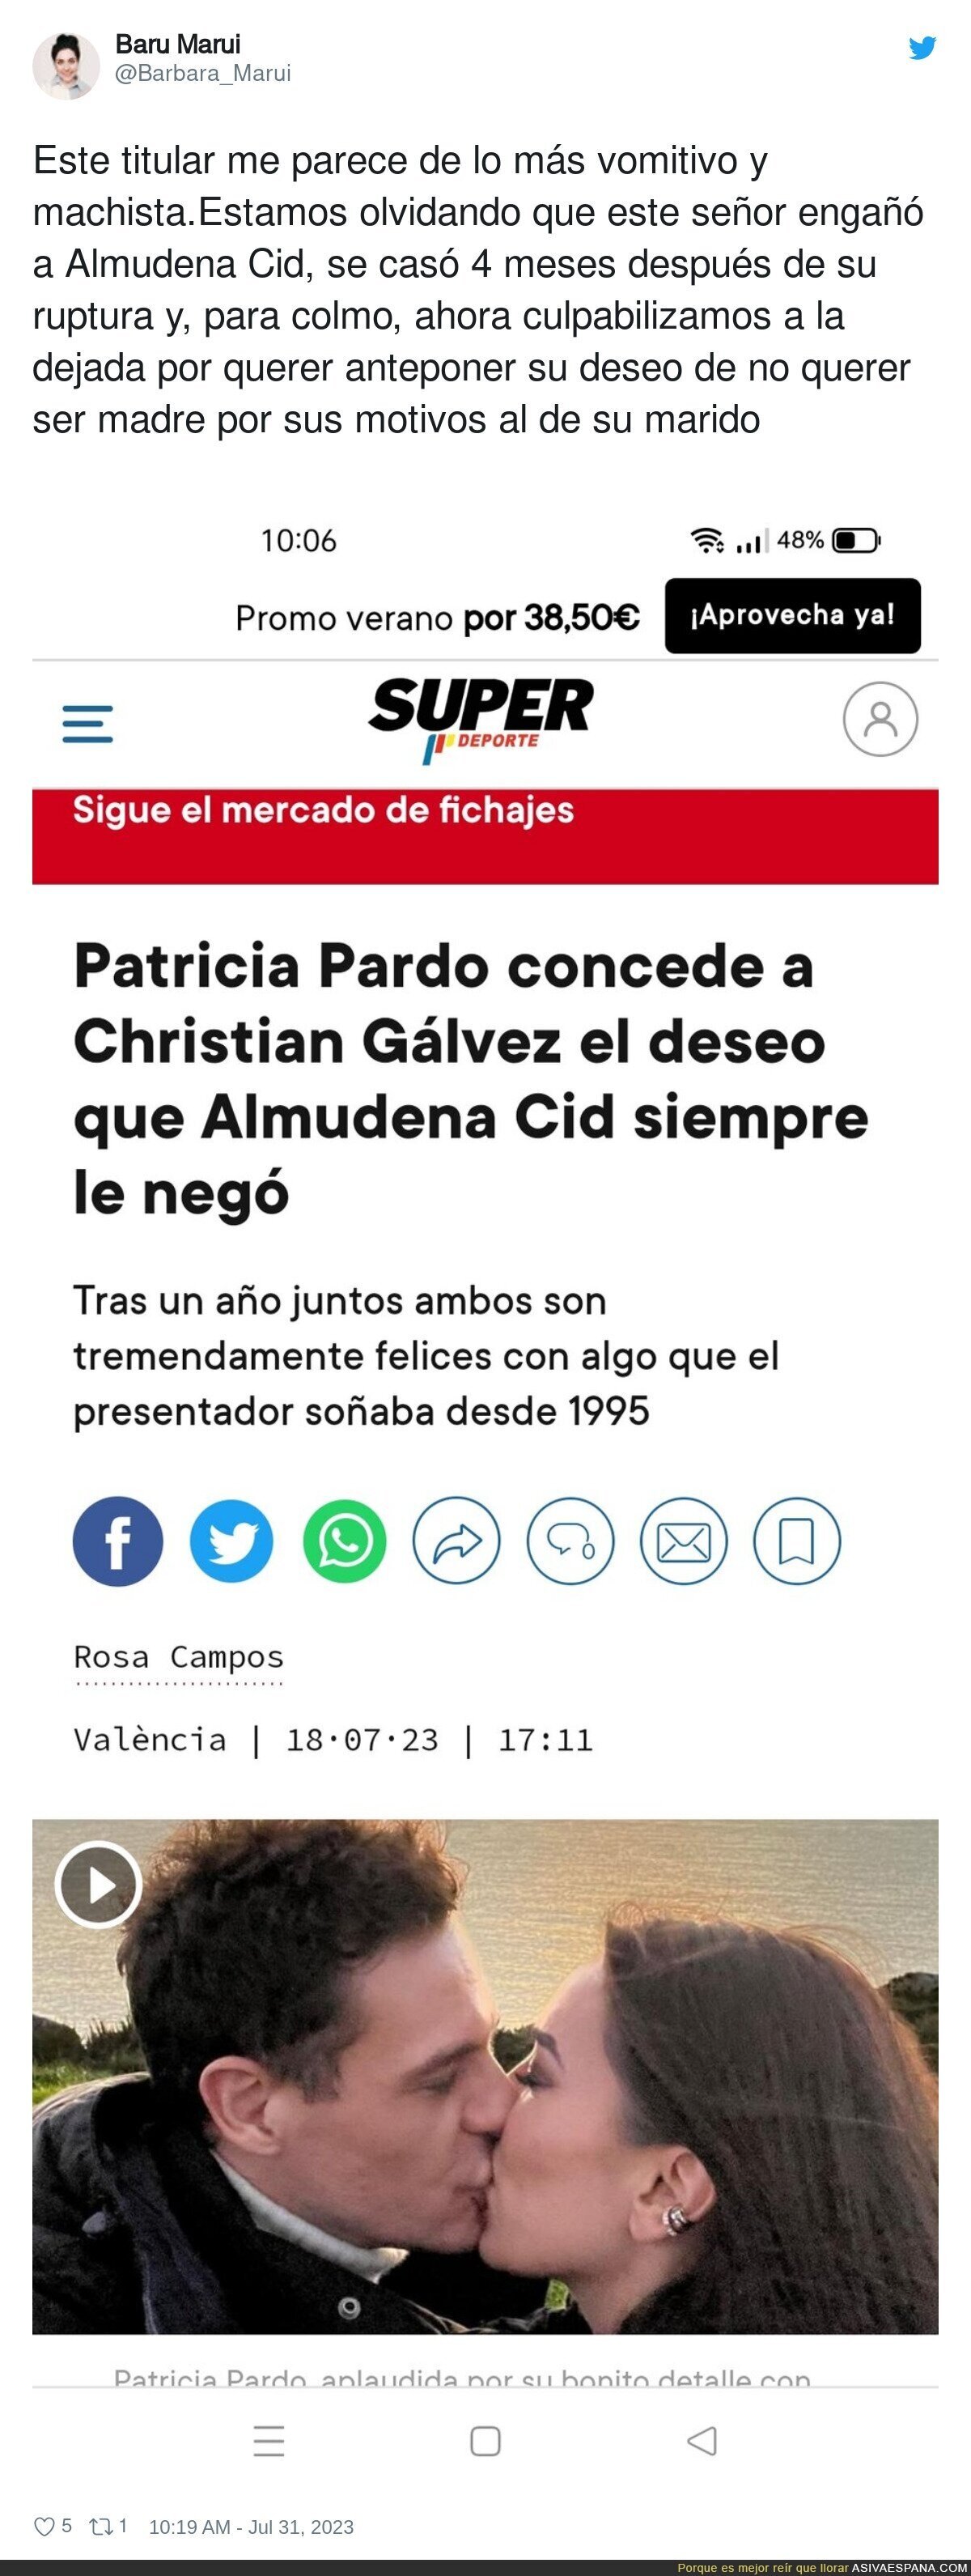 El repugnante titular sobre Almudena Cid y Christian Gálvez